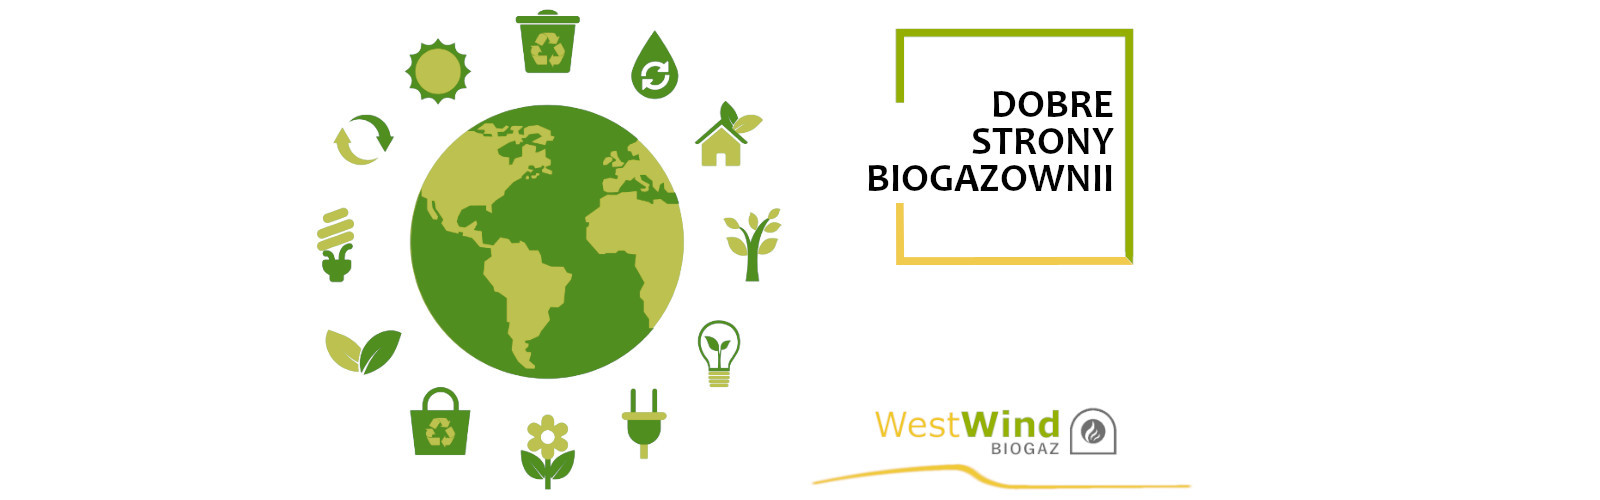 dobre strony biogazowni